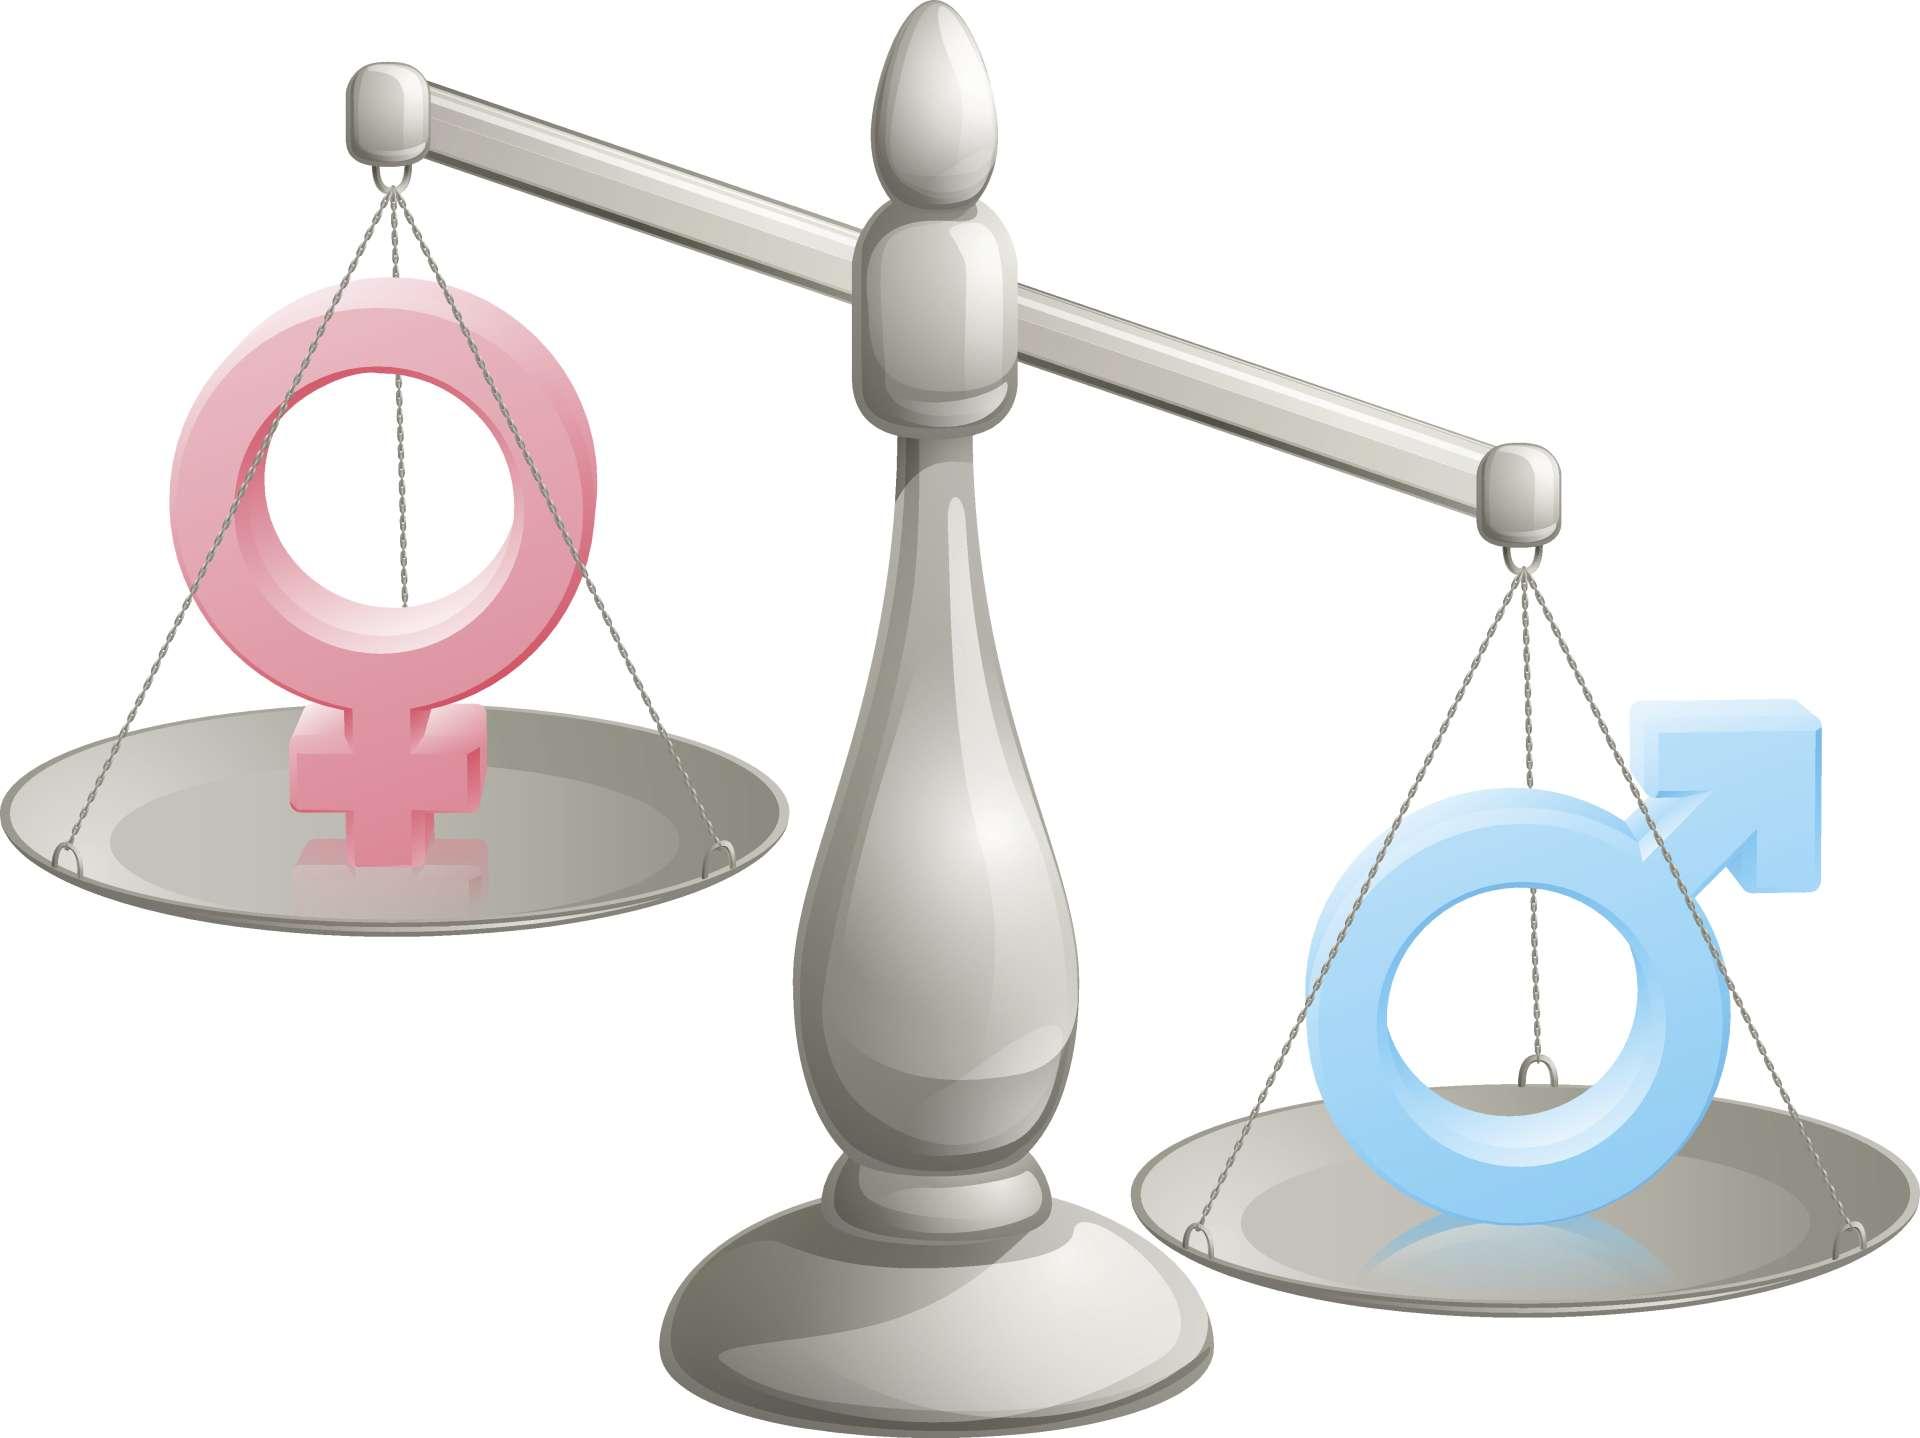 Mann Frau skaliert Konzept mit männlichen und weiblichen Symbolen, wobei der Mann mehr wiegt